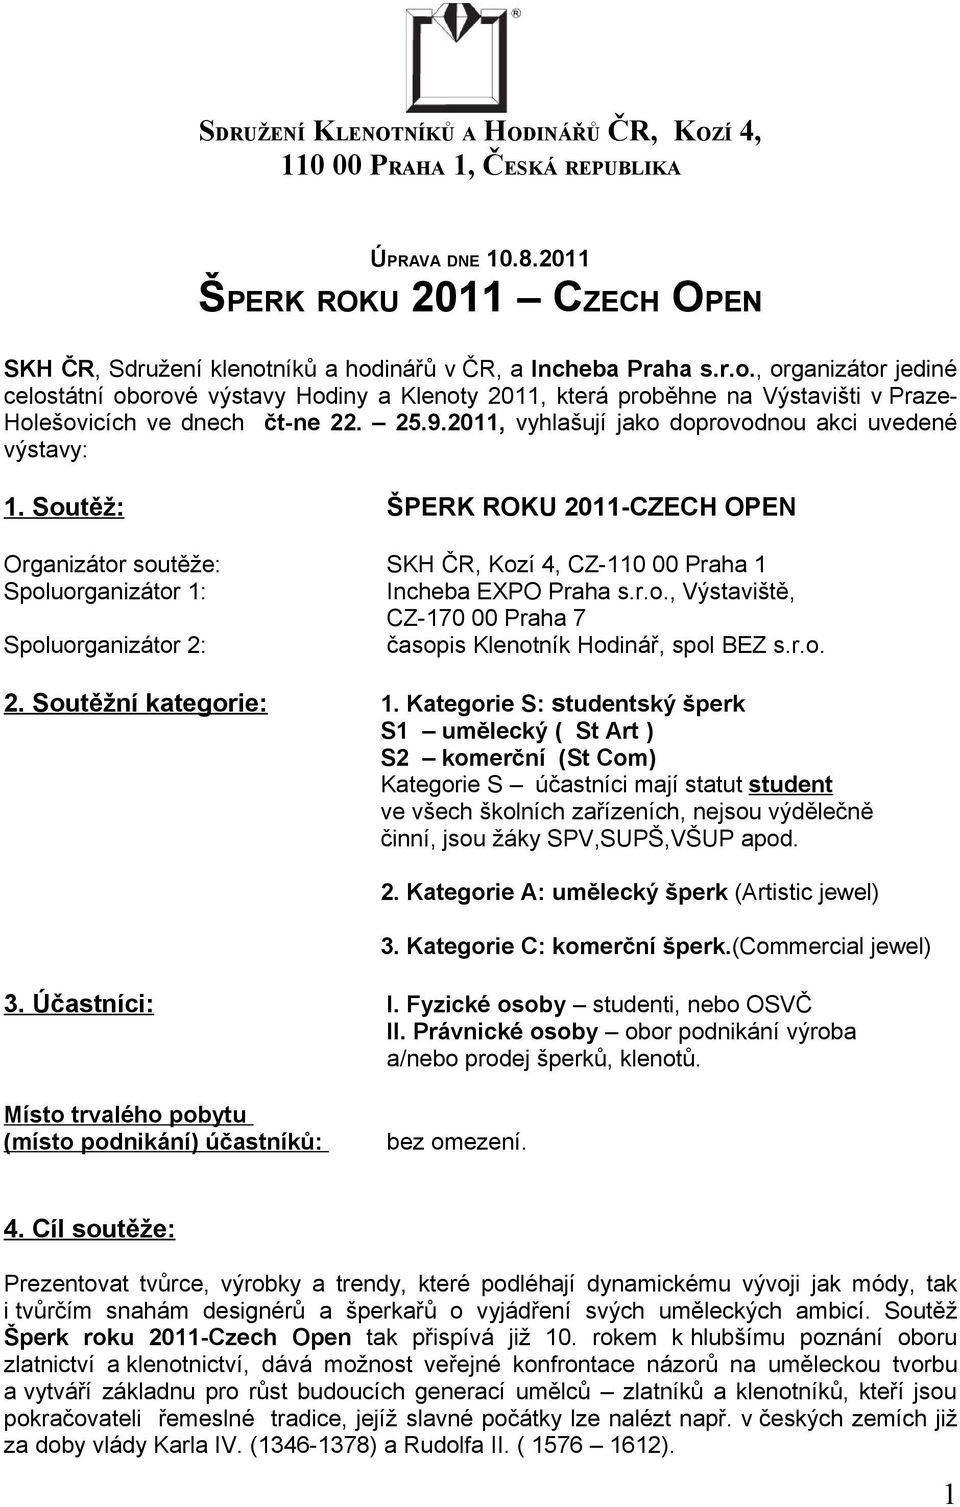 SDRUŽENÍ KLENOTNÍKŮ A HODINÁŘŮ ČR, KOZÍ 4, PRAHA 1, ČESKÁ REPUBLIKA - PDF  Stažení zdarma